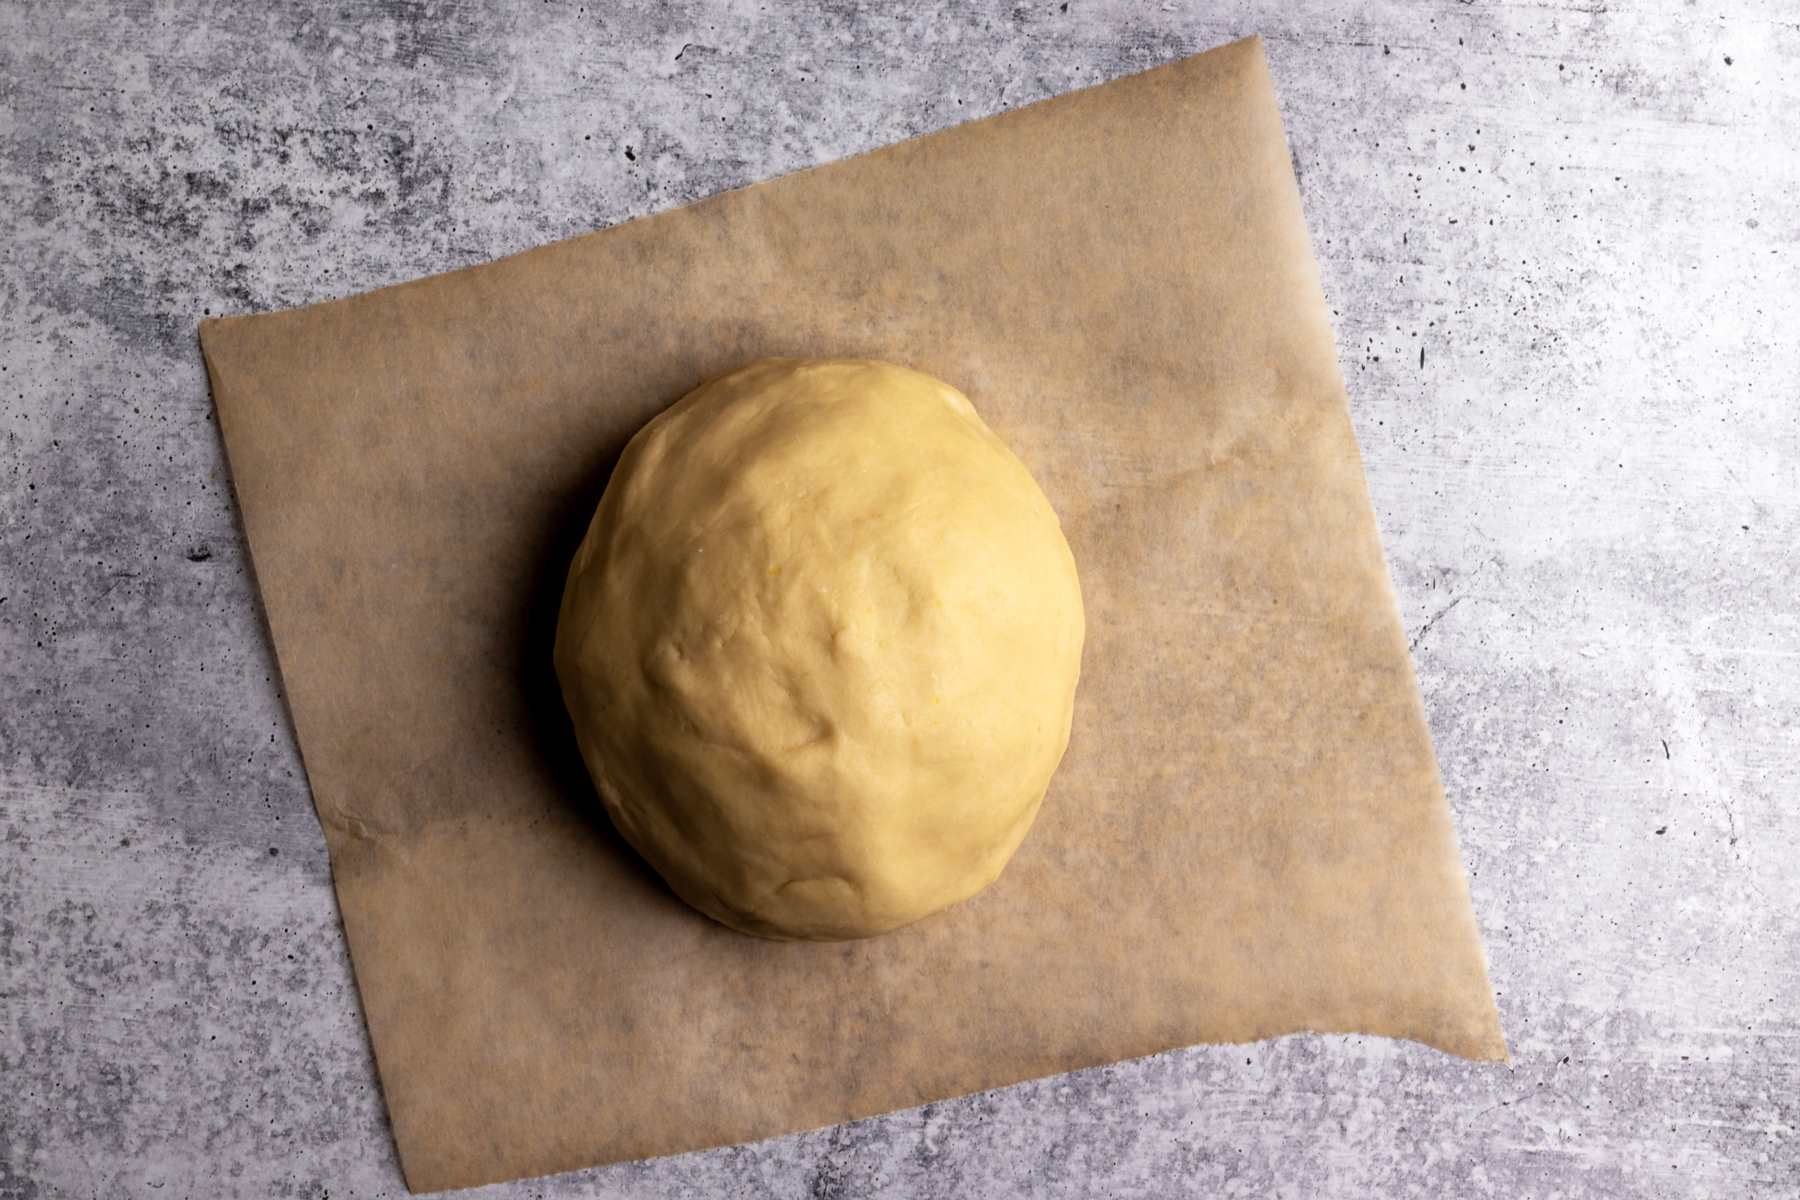 Gurabije dough.